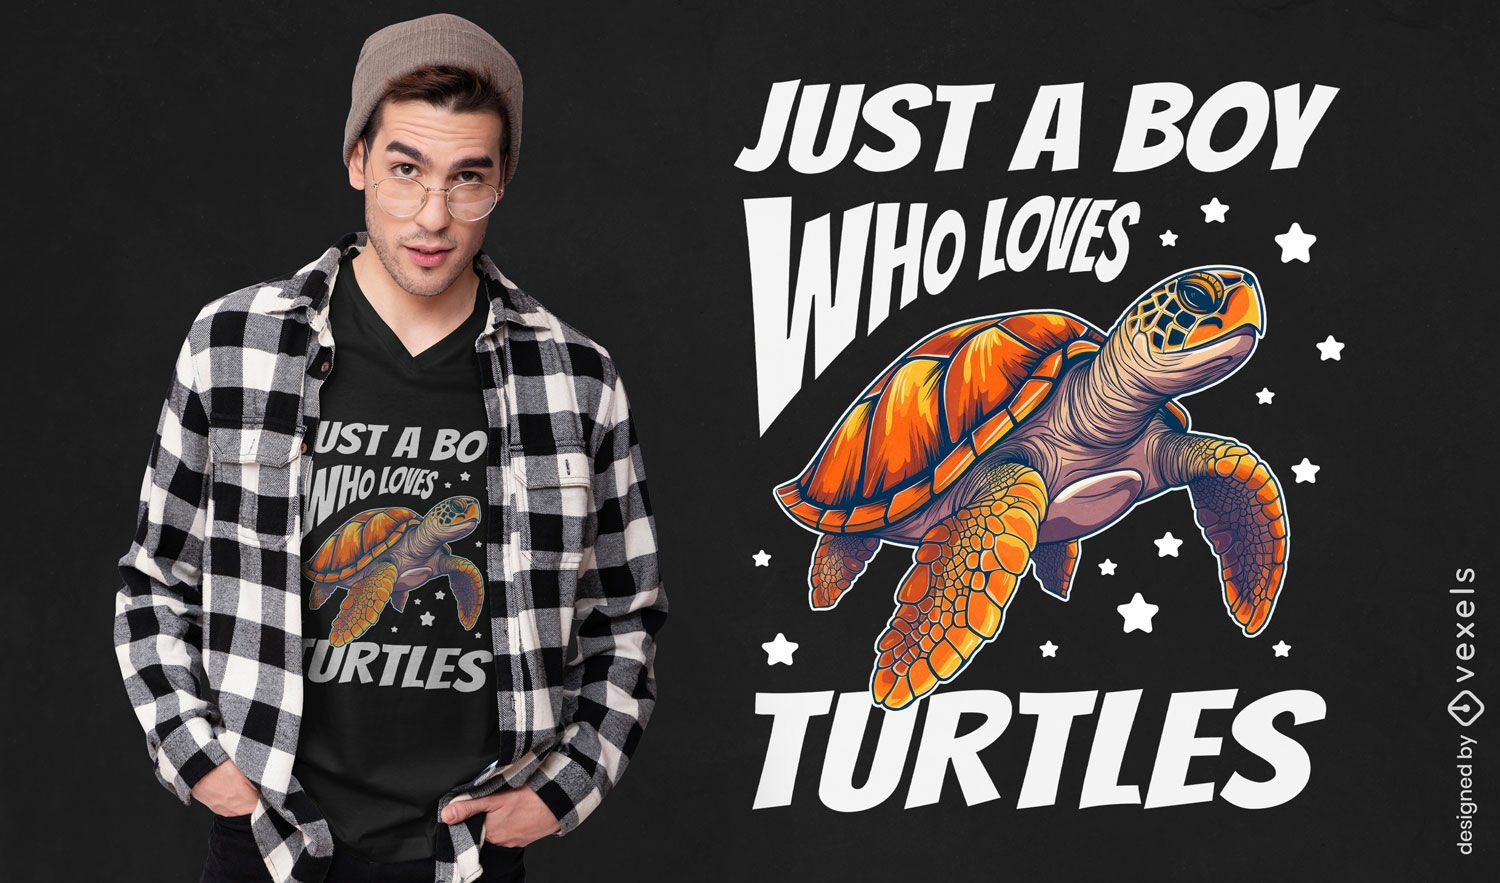 Dise?o de camiseta entusiasta de las tortugas.